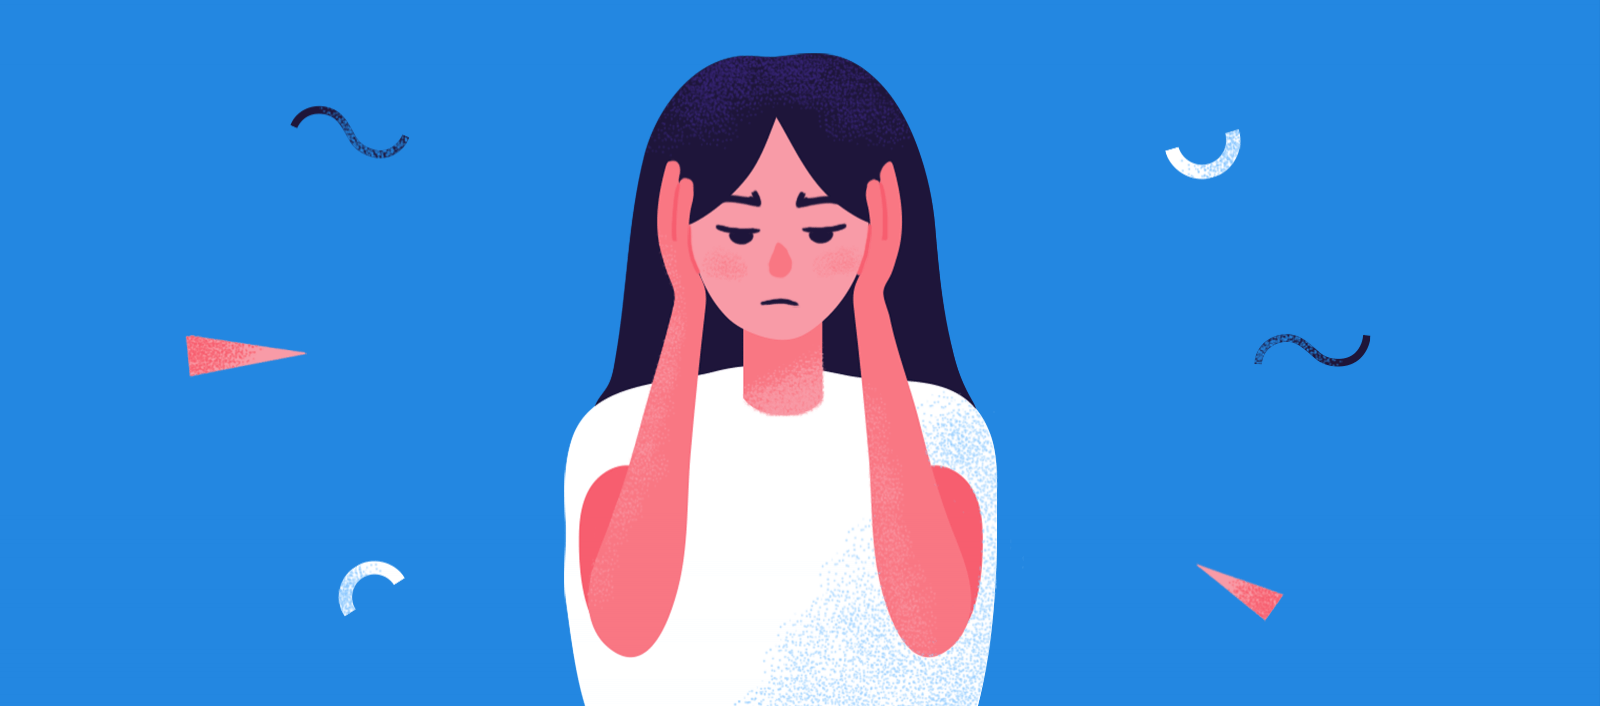 对声音和焦虑障碍的超敏感:症状、原因和已证实的解决方案